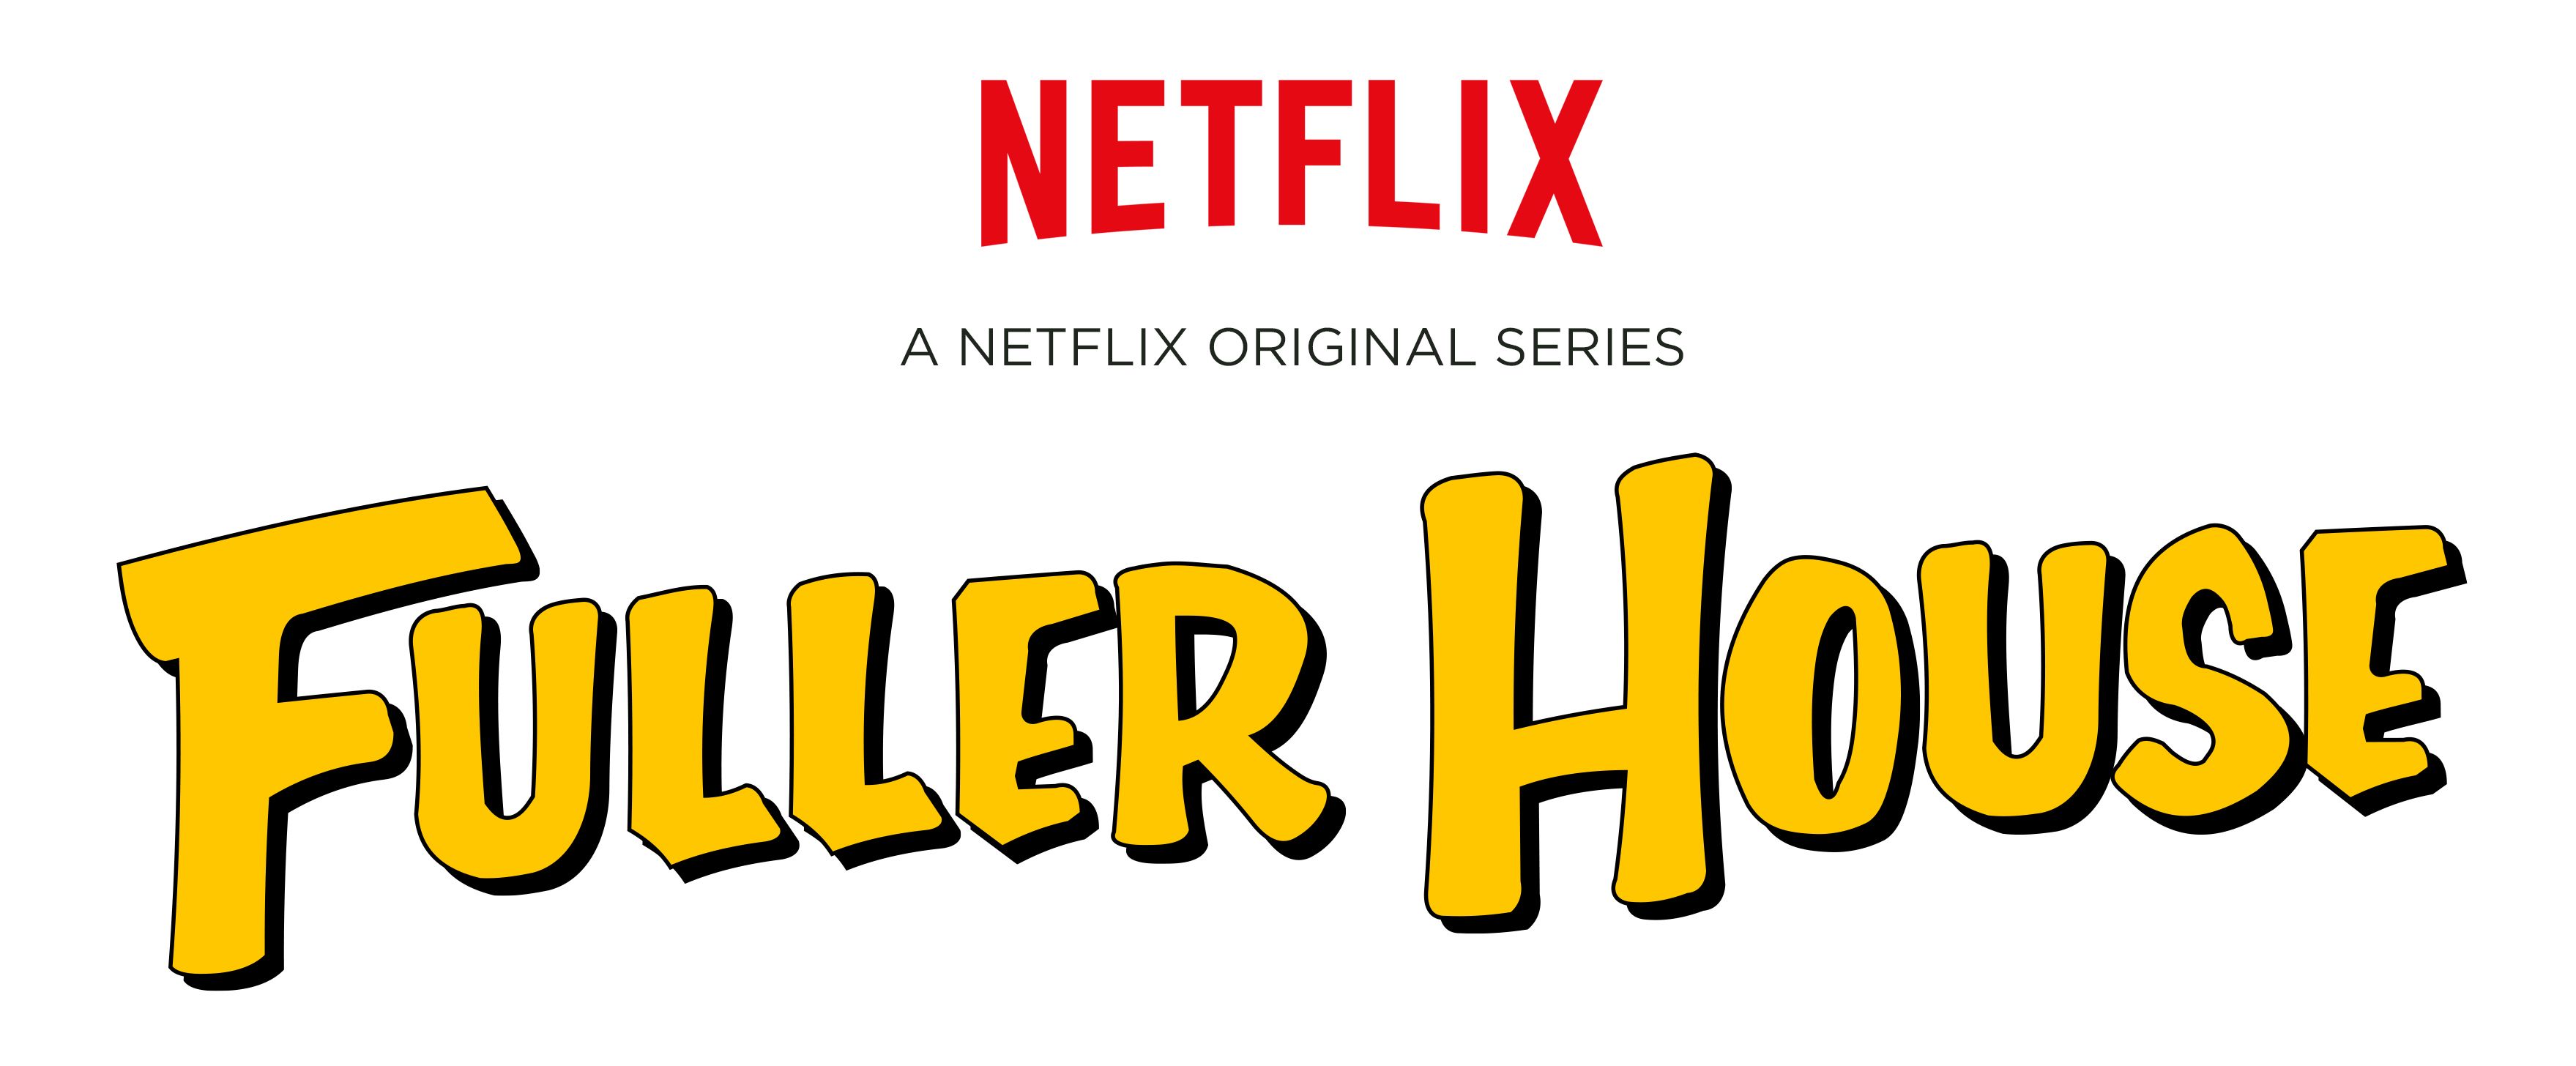 Fuller House TV Series Logo Revealed By Netflix